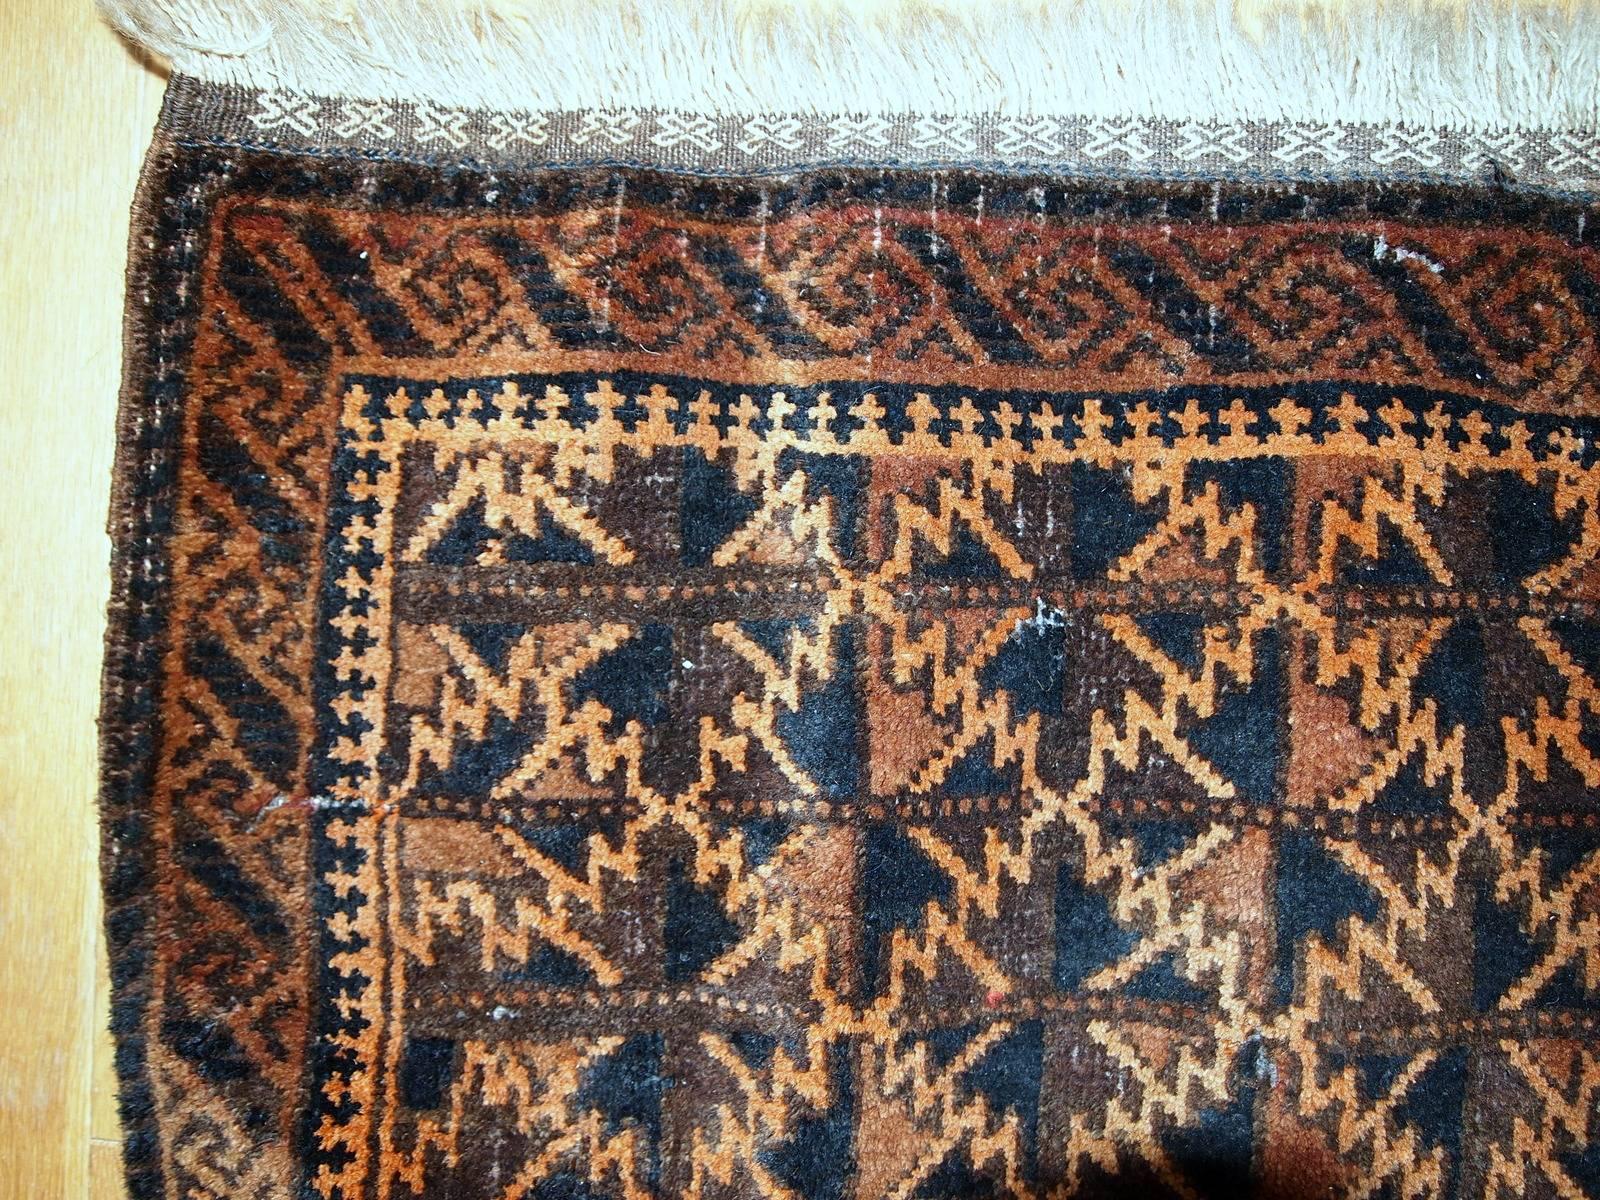 Antique sac afghan Baluch fait main, visage. Le tapis présente un motif géométrique répétitif en forme de diamant. Les principales couleurs de ce tapis sont l'orange et différentes nuances de brun. Belle bordure artistique entourant le tapis. Le